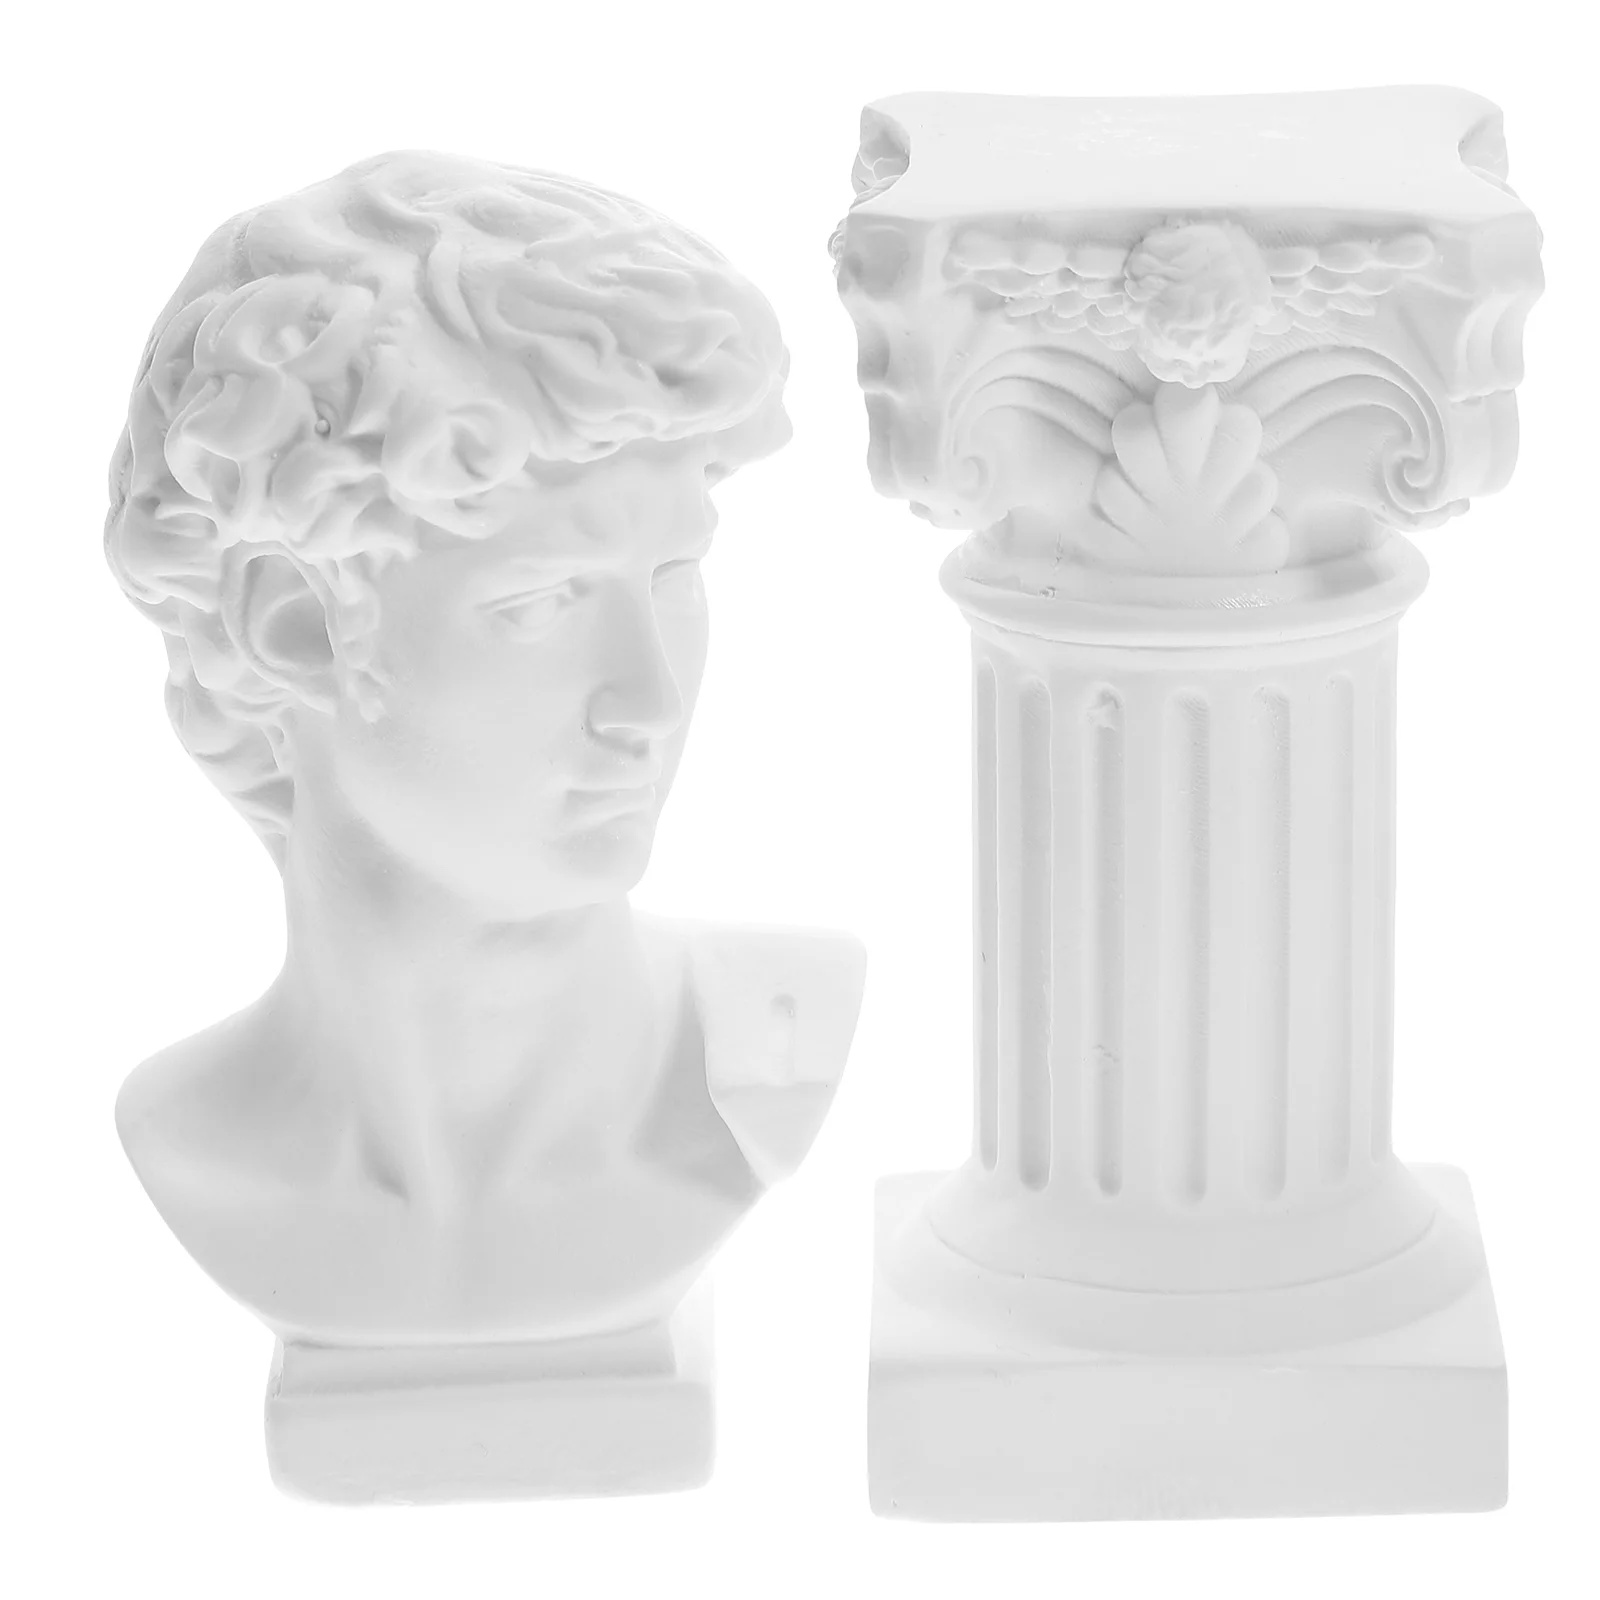 Статуэтки, украшения, статуэтка Давида из смолы, домашний декор, гипсовые мини-фигурки классического римского стиля 3